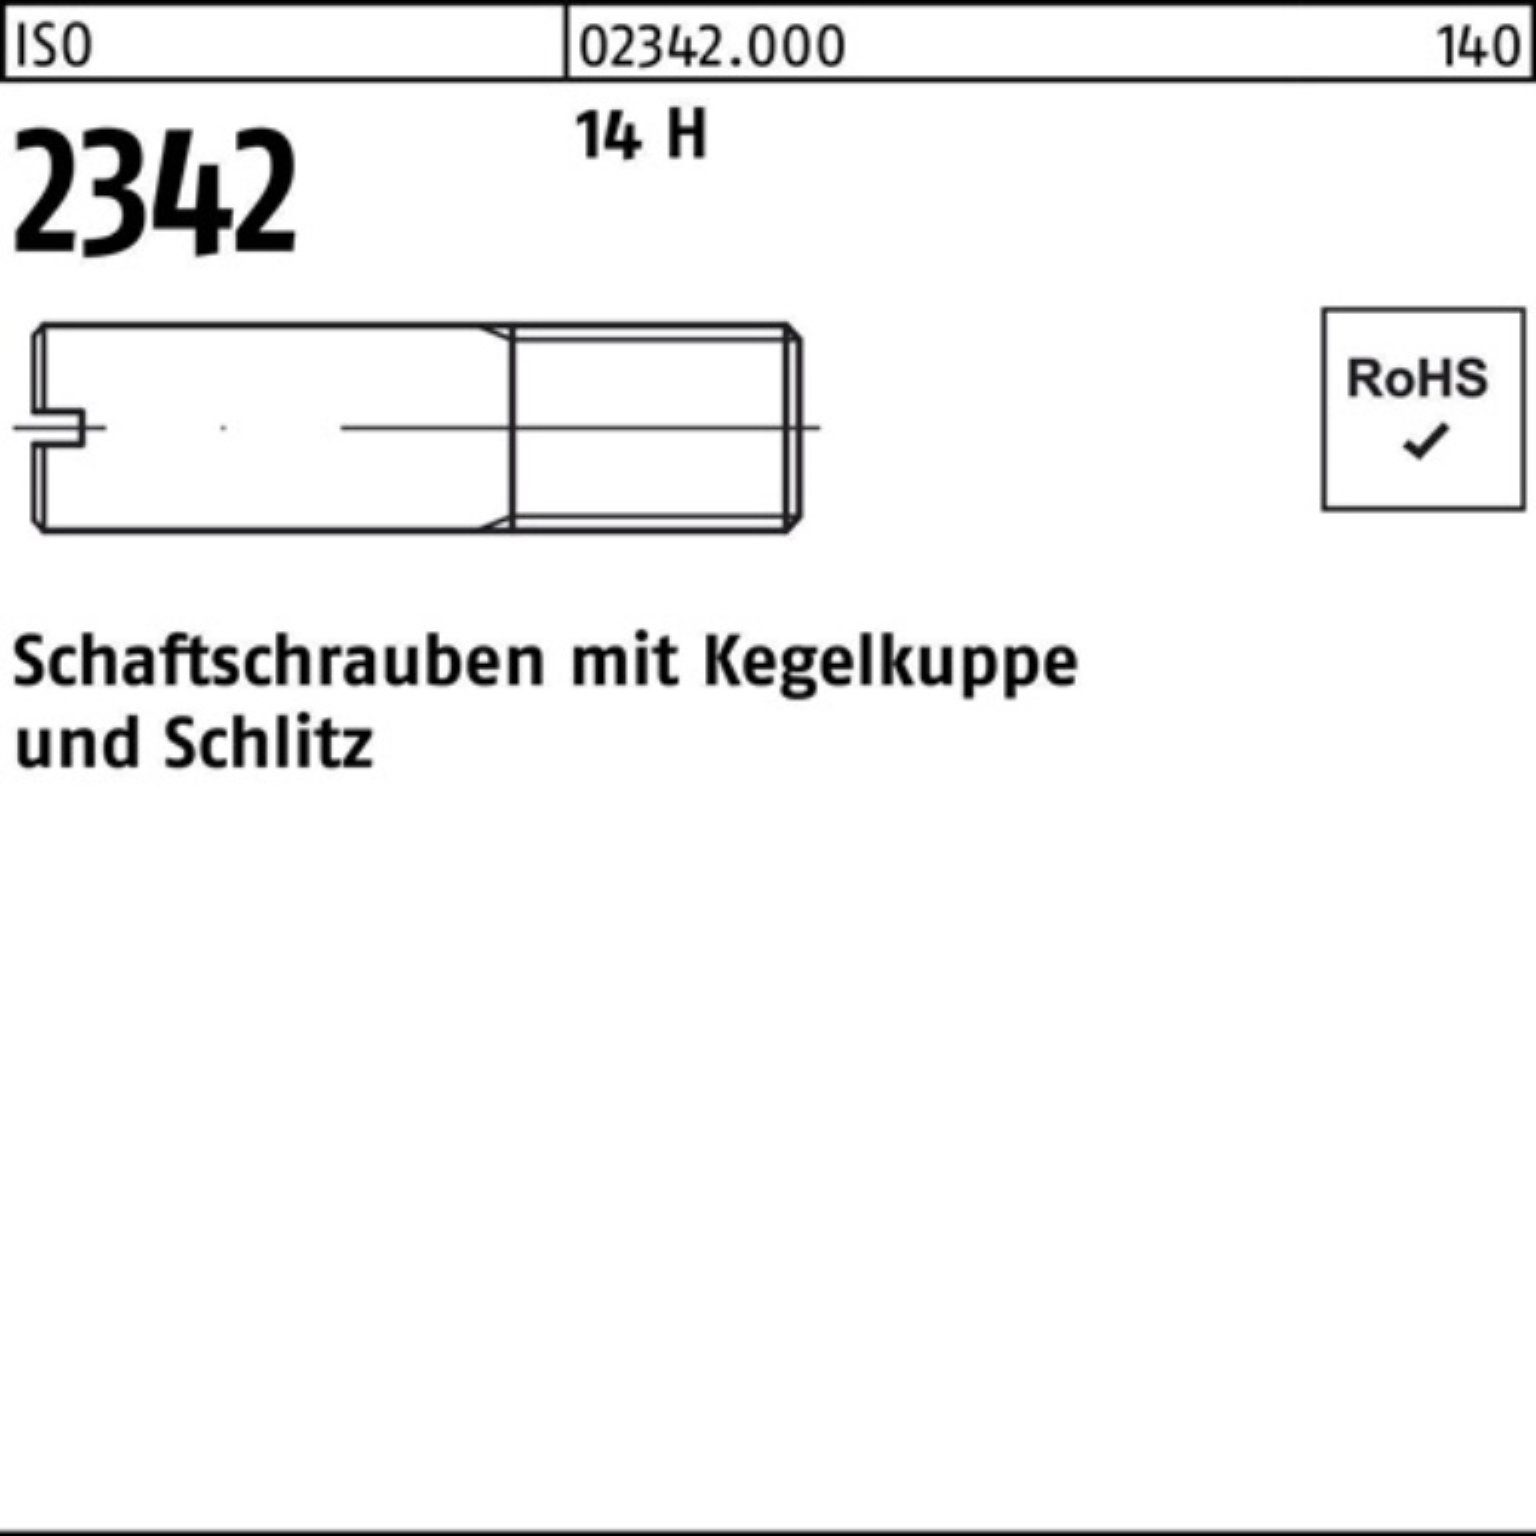 14 2342 Pack Reyher H Schaftschraube 35 100er Schraube M6x 100 Kegelkuppe/Schlitz ISO